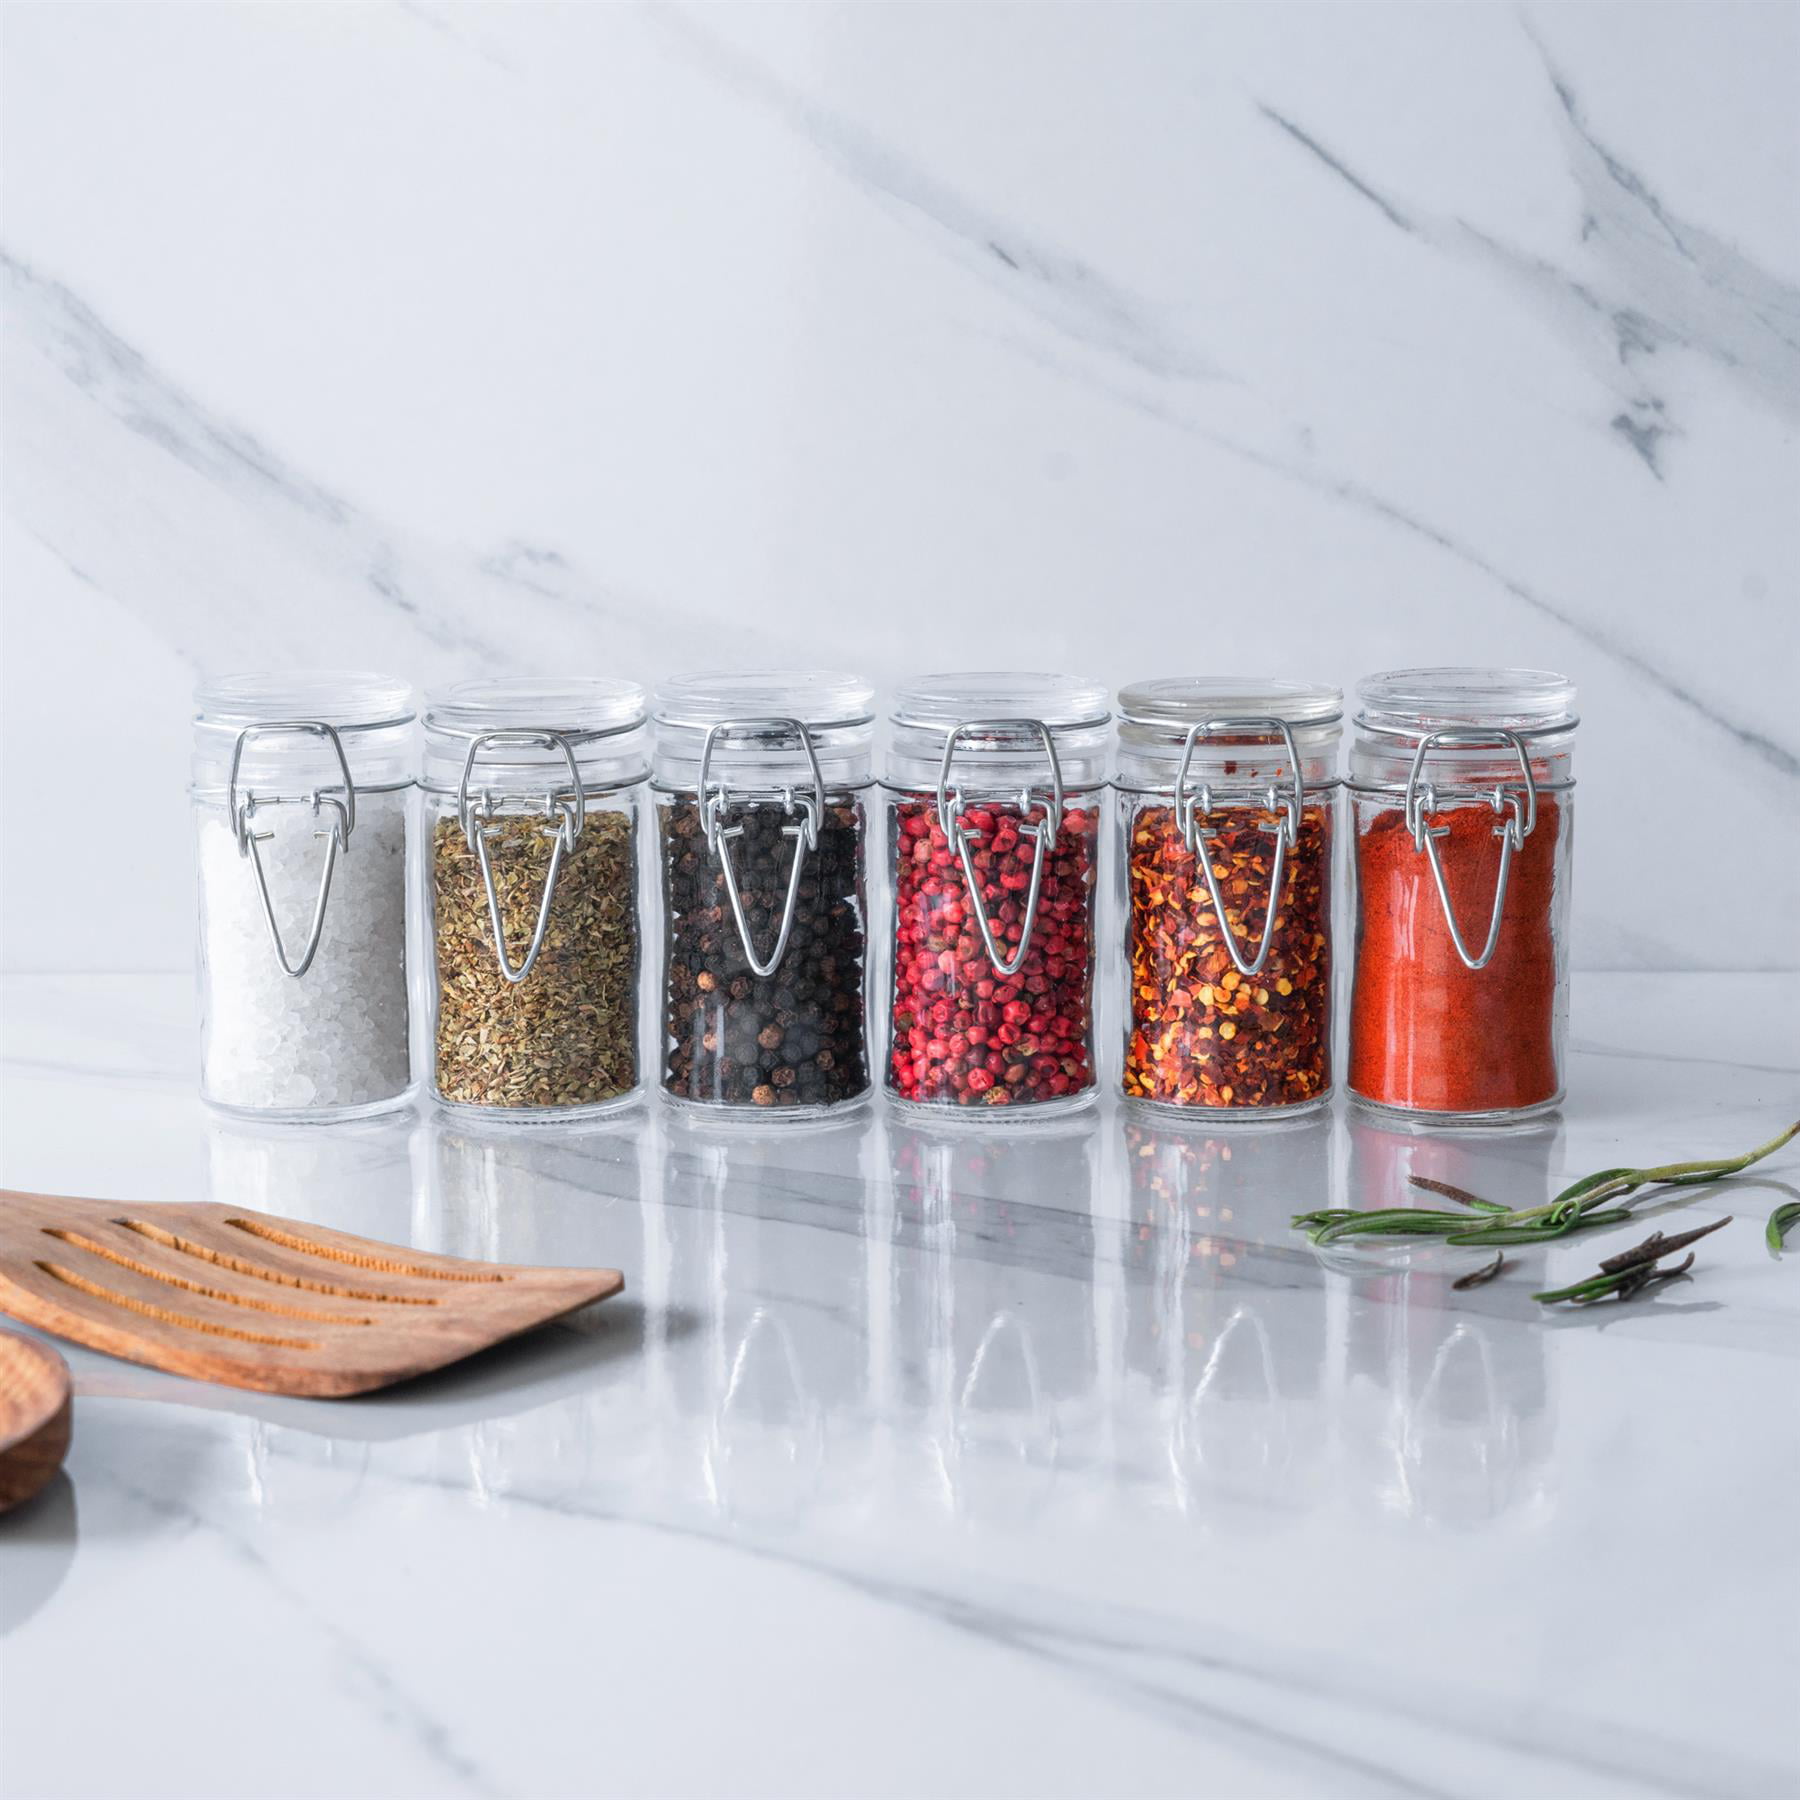 Openook 6 Piece Spice Jar Set